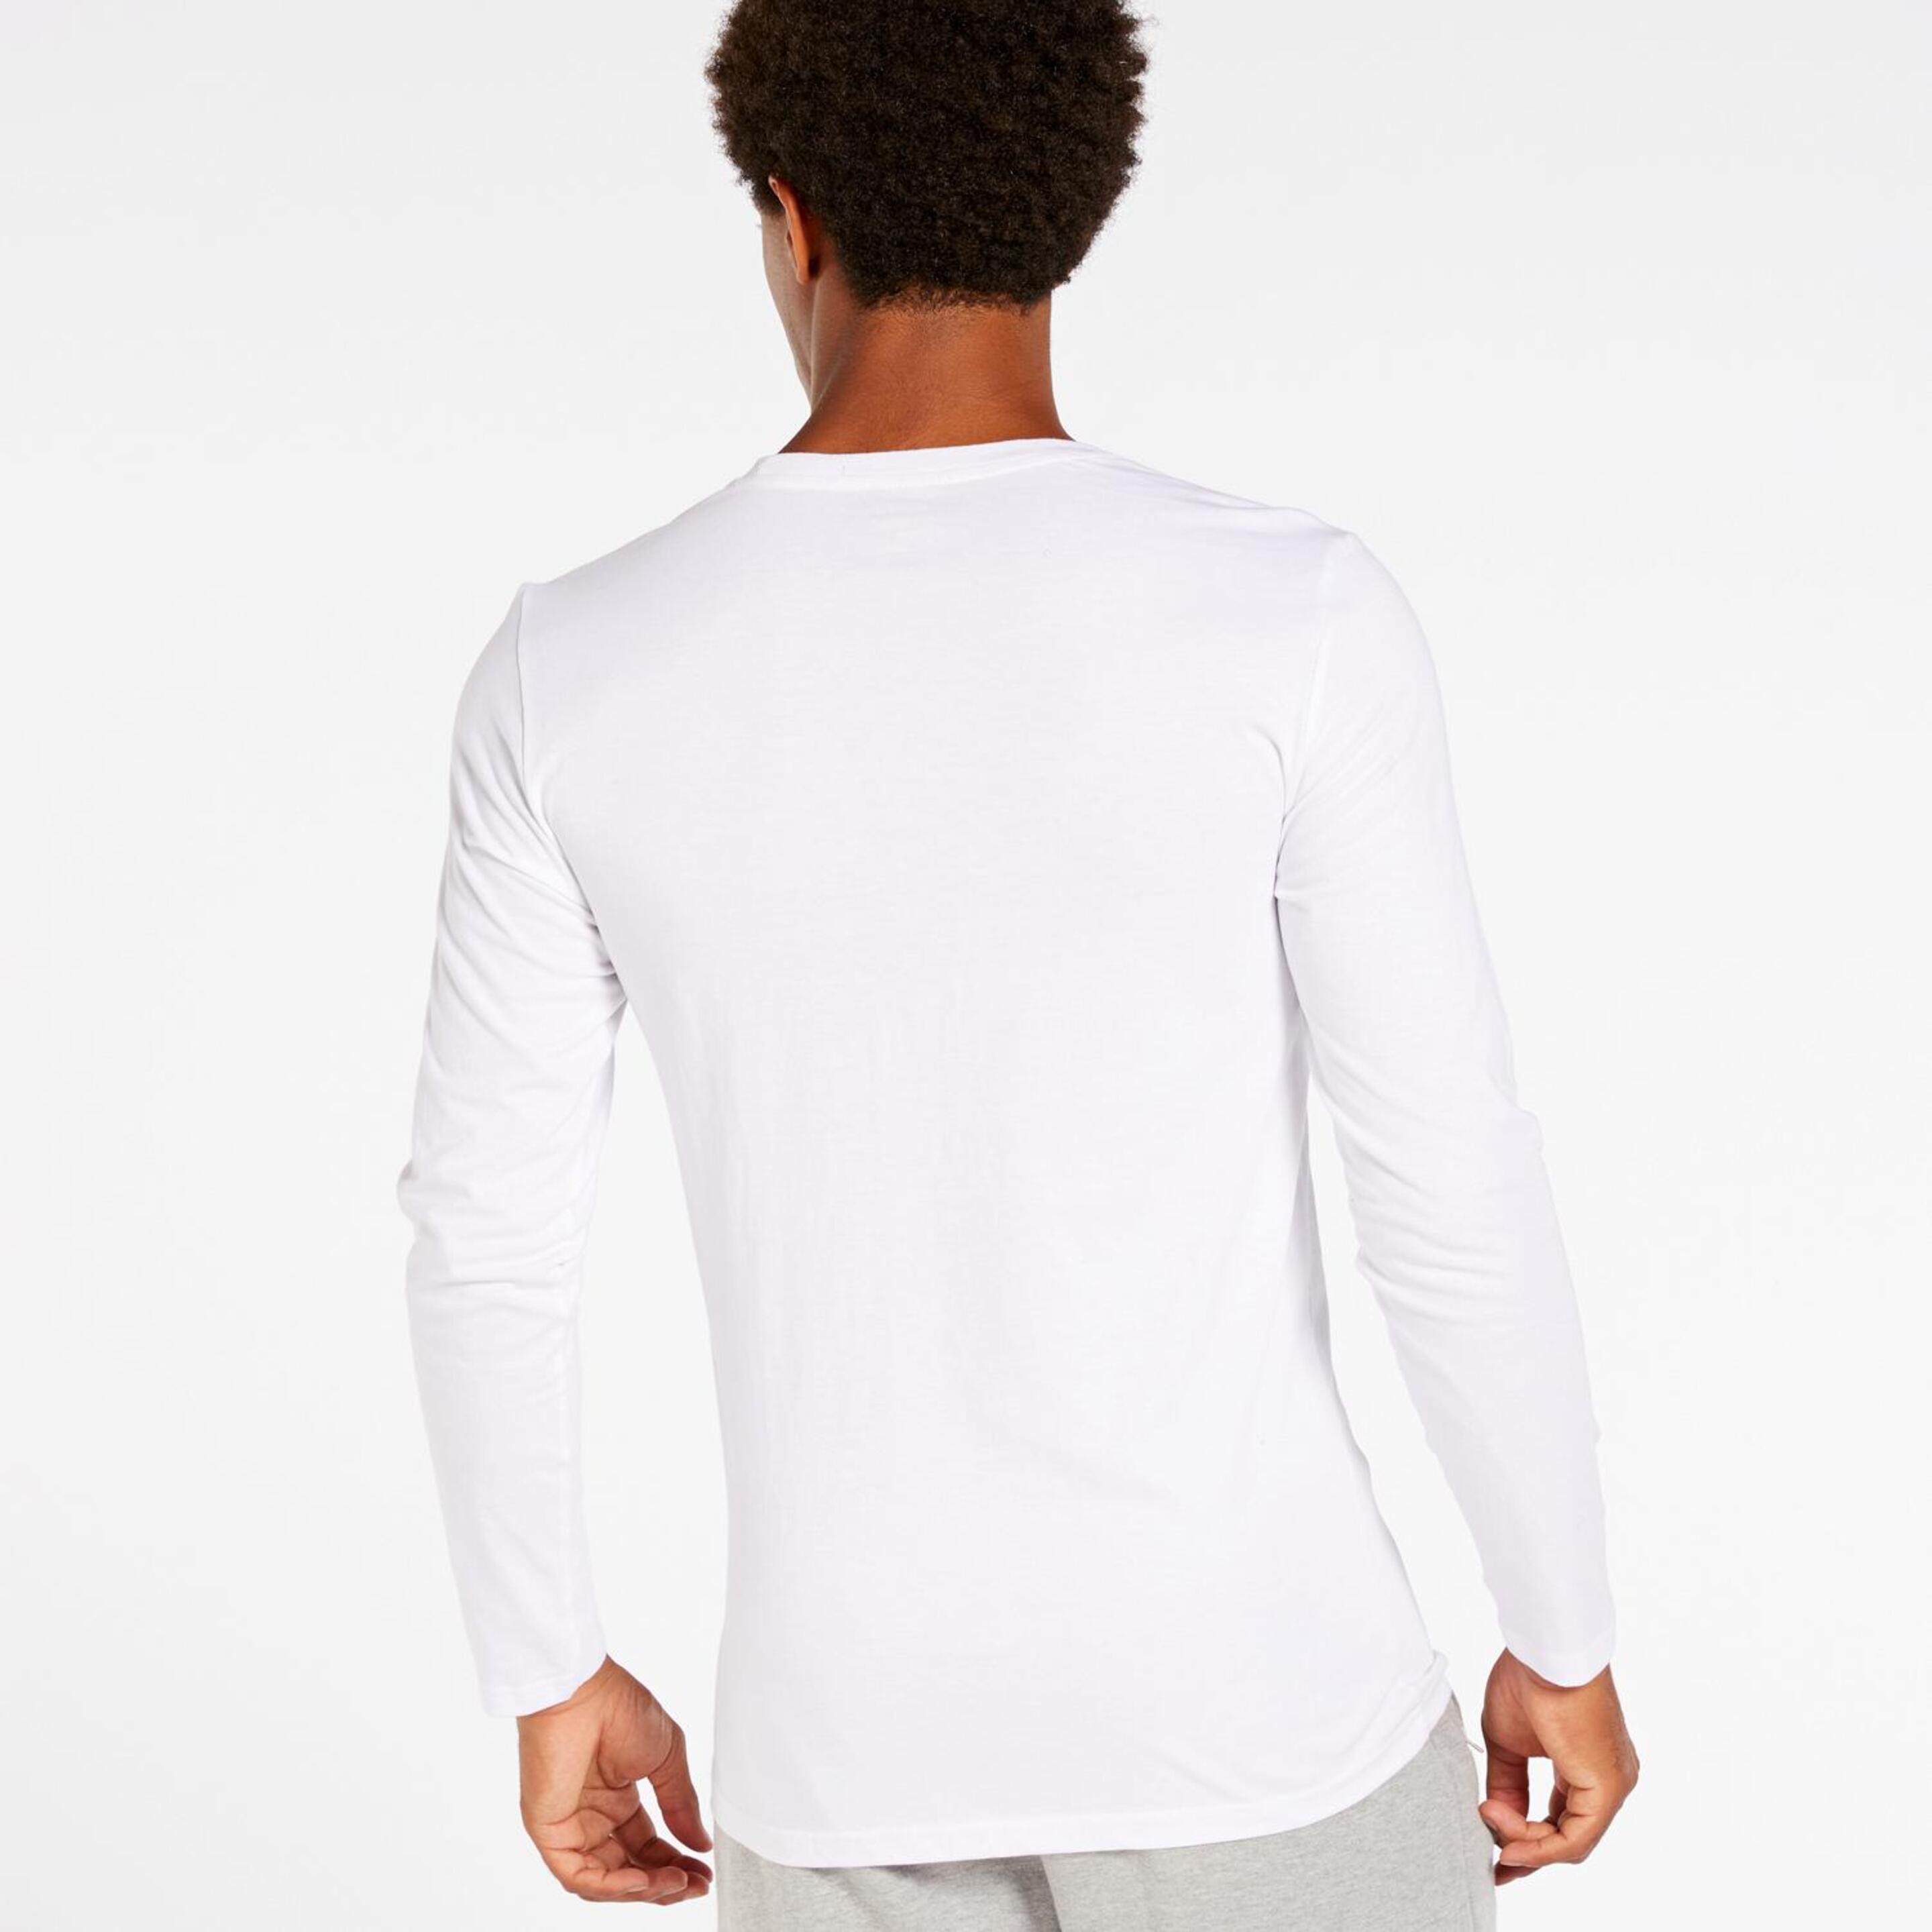 Camiseta Up Basic - Blanco - Camiseta Manga Larga Hombre